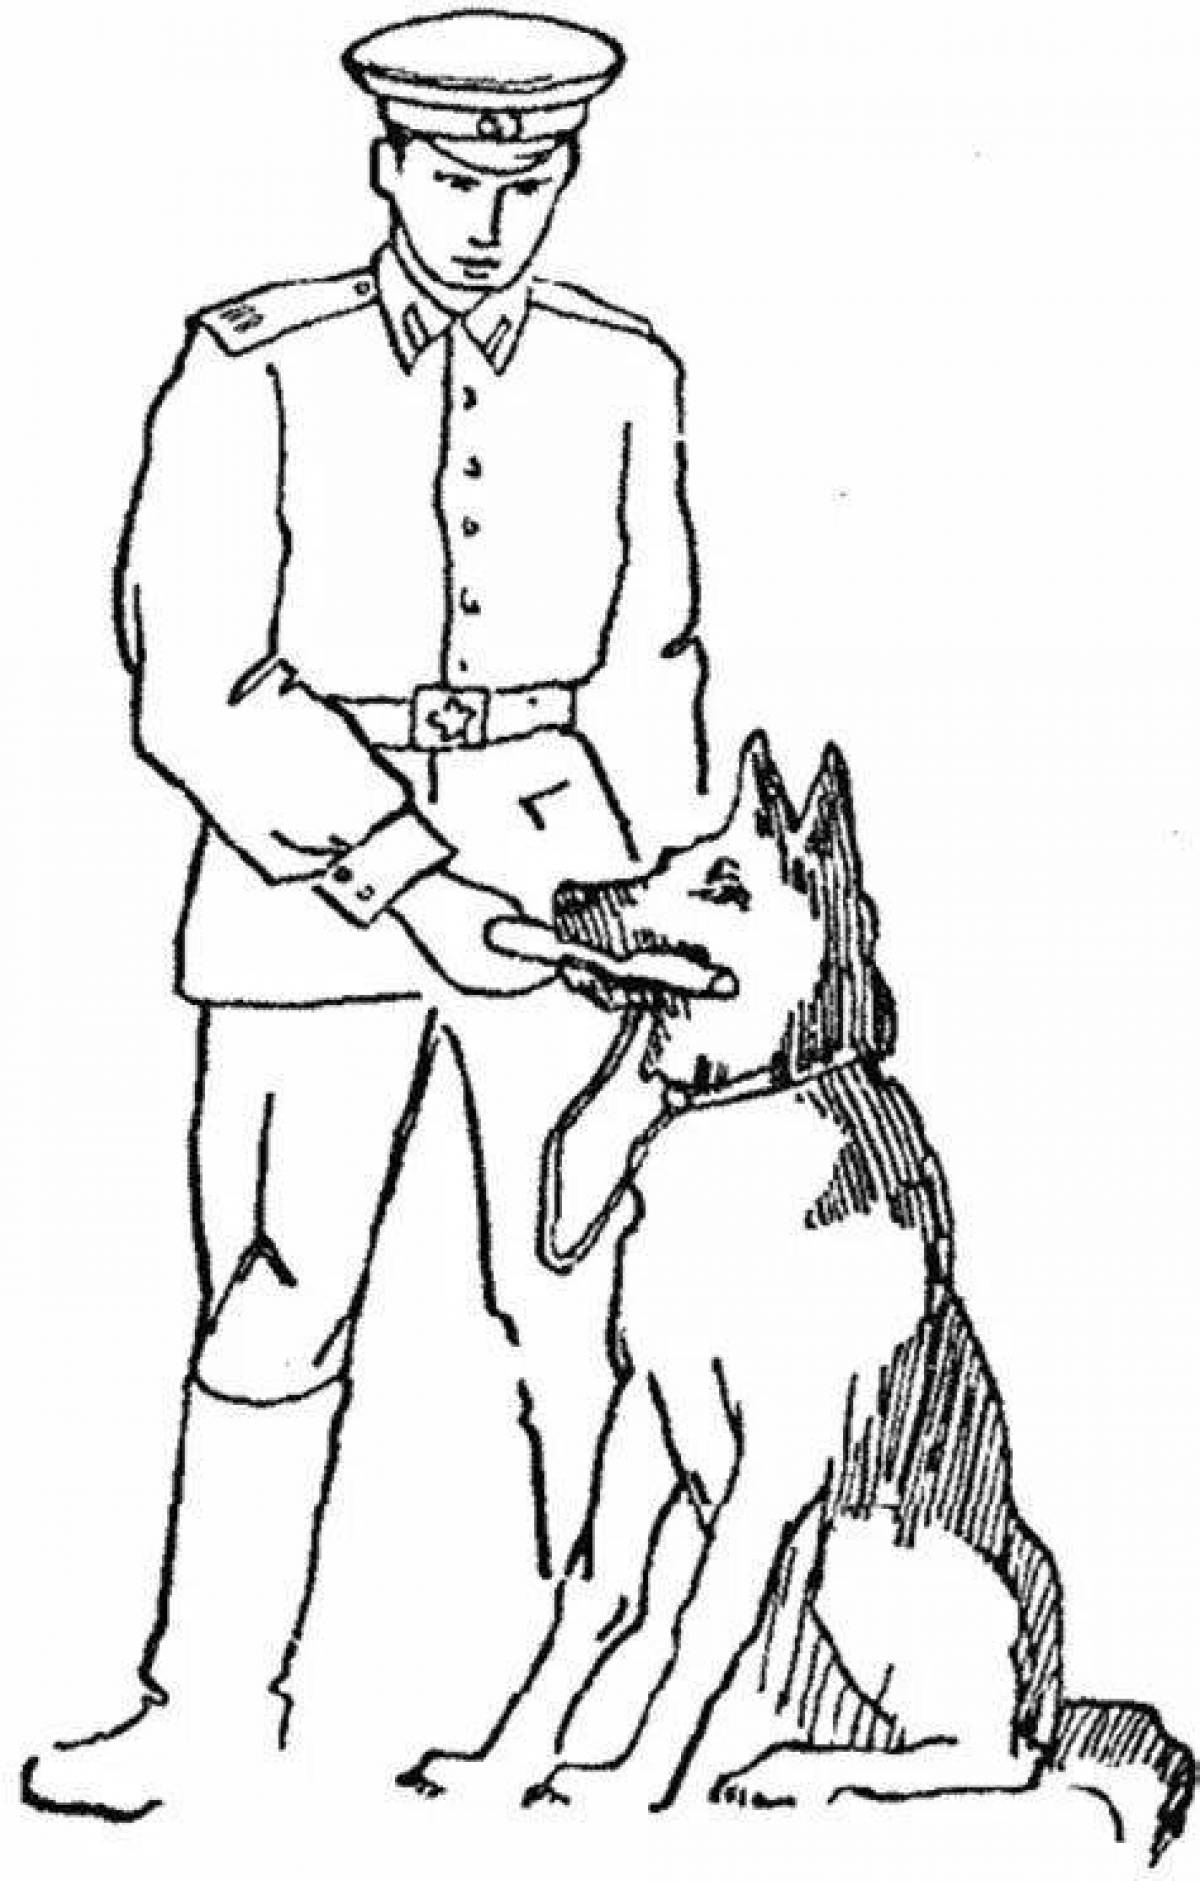 Royal border guard with dog